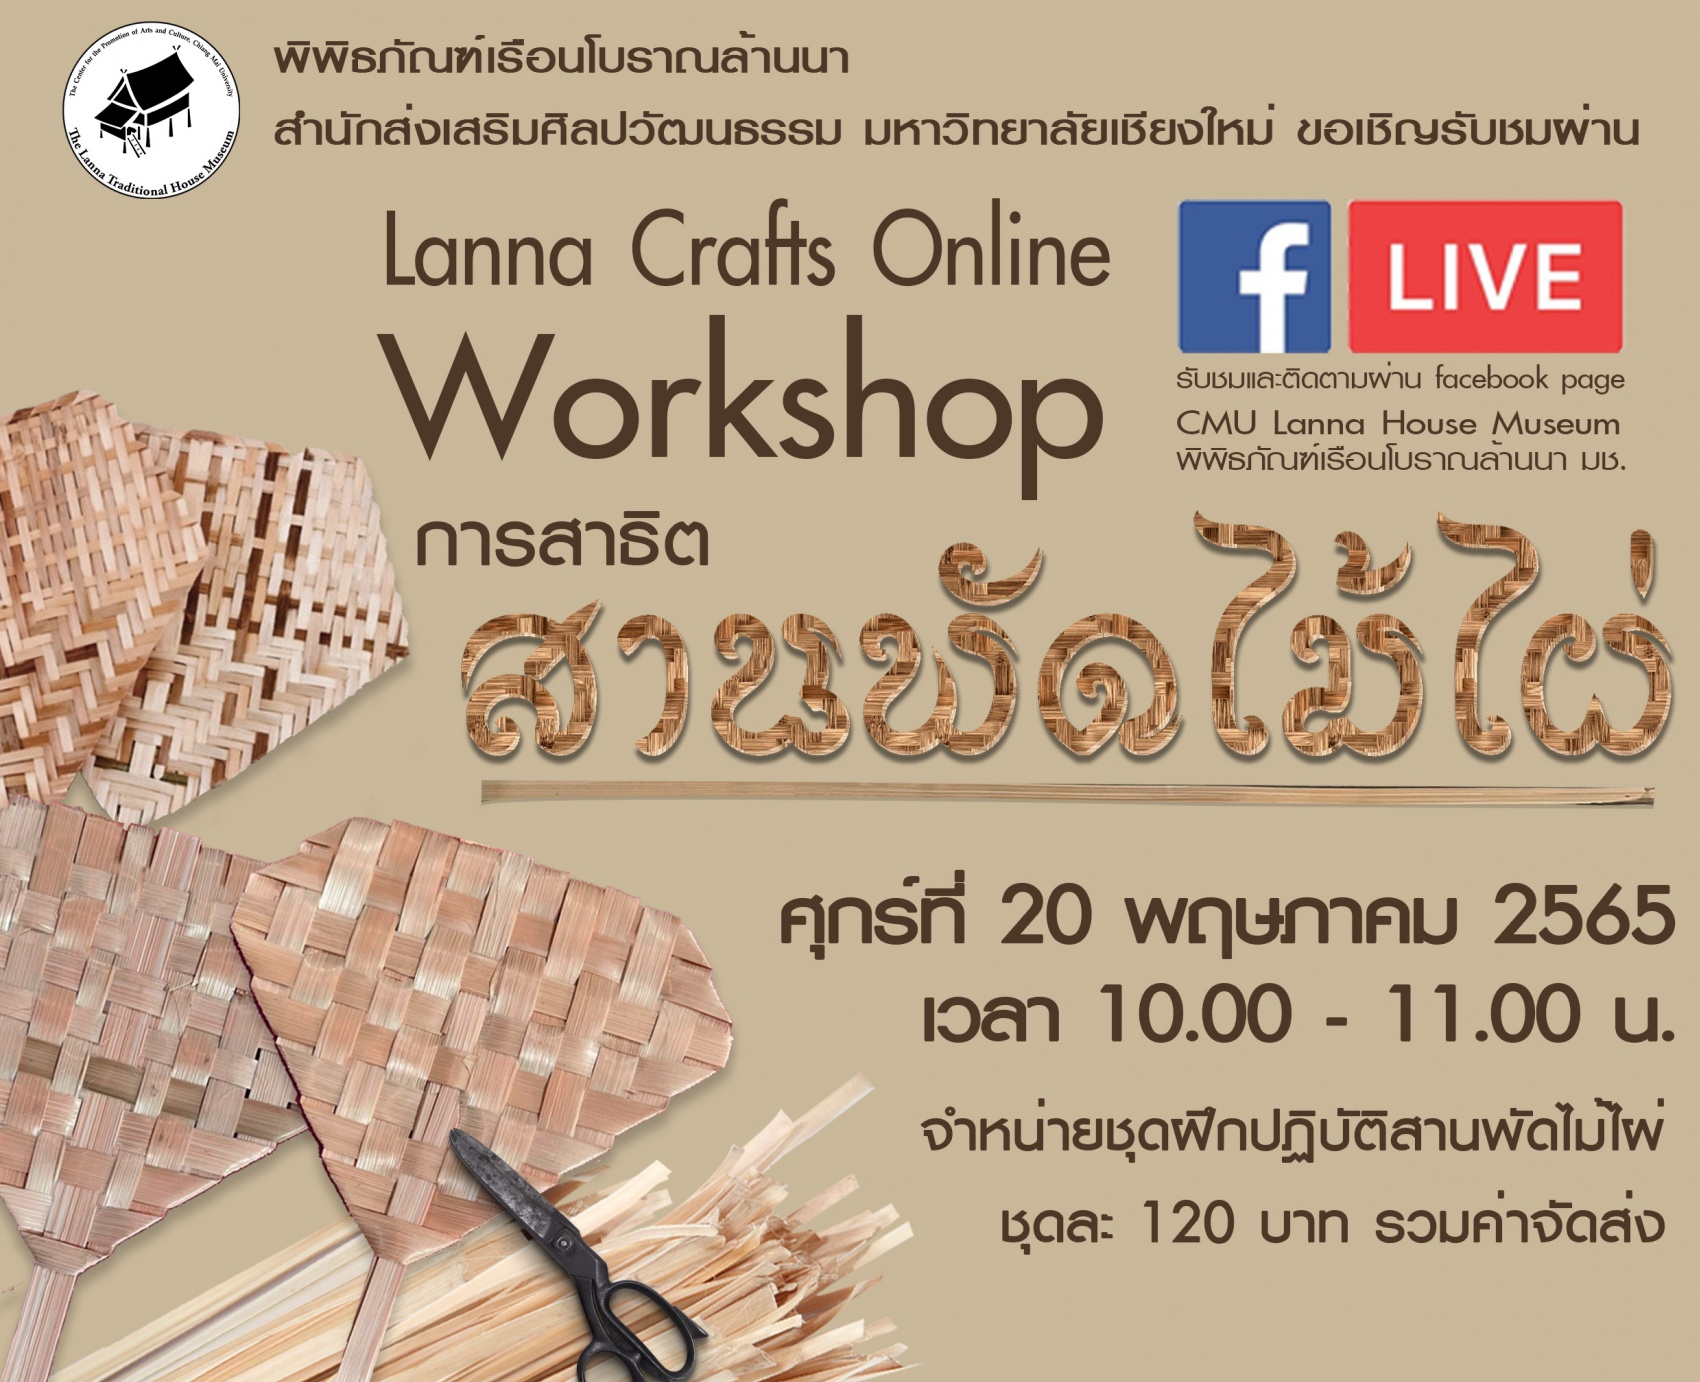 ขอเชิญรับชมและปฏิบัติกิจกรรม Workshop  Lanna Crafts Online หัวข้อ 